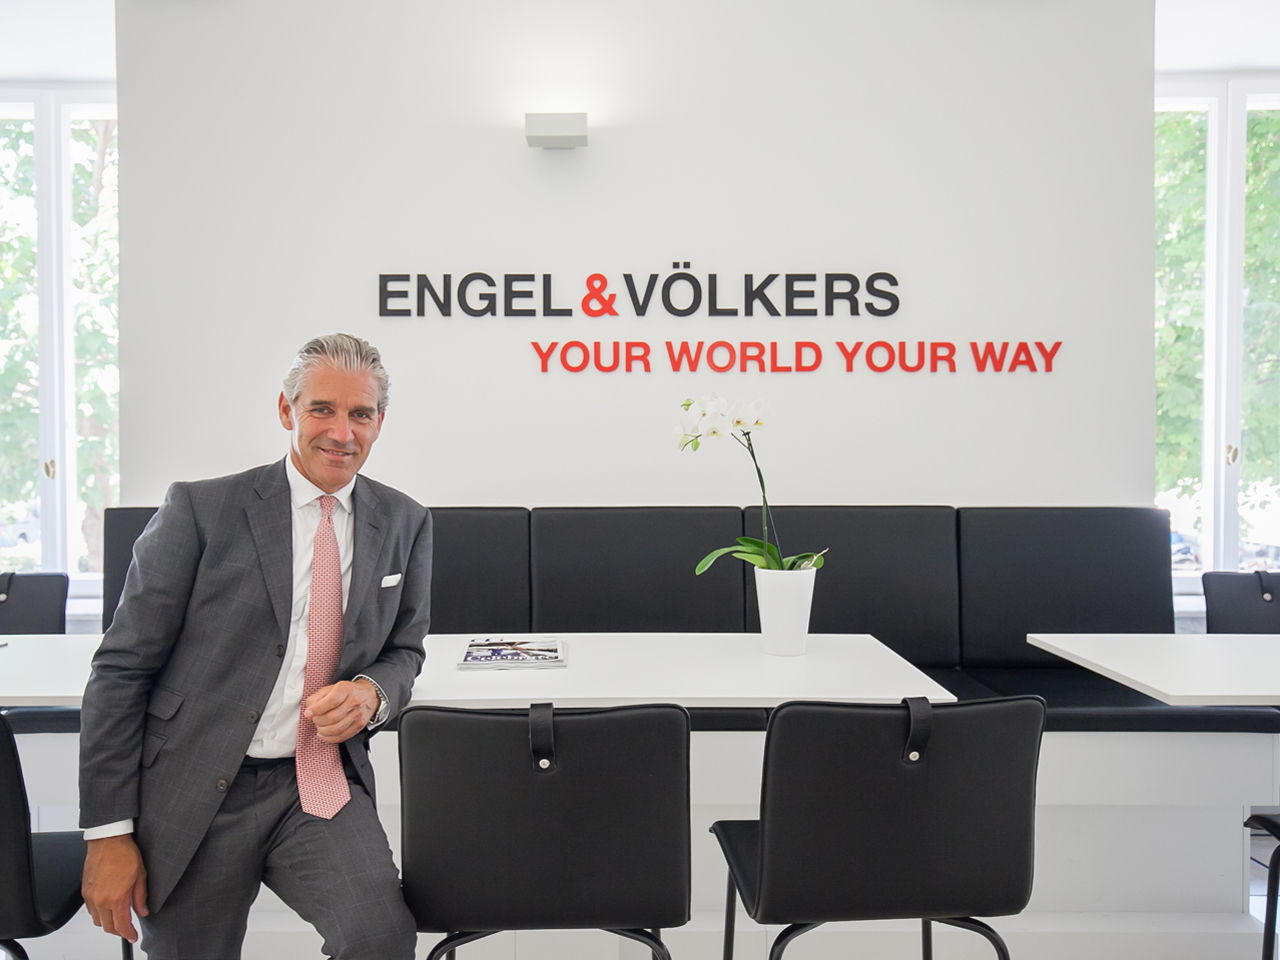 40 años de Engel & Völkers: cómo comenzó el camino hacia una marca global